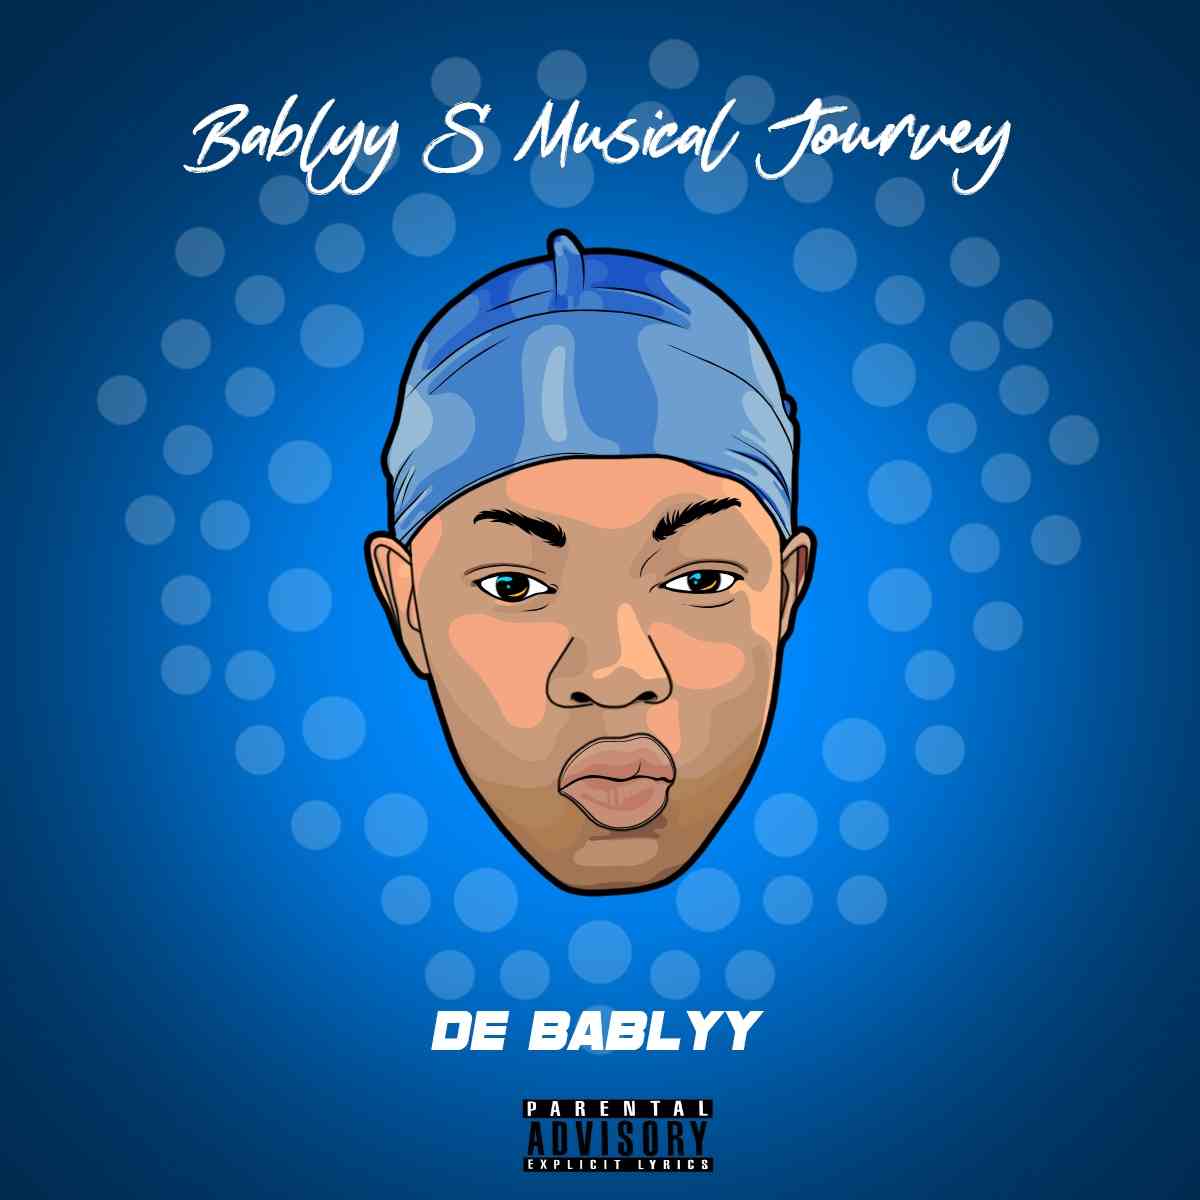 De Bablyy BabLyys Musical Journey Album